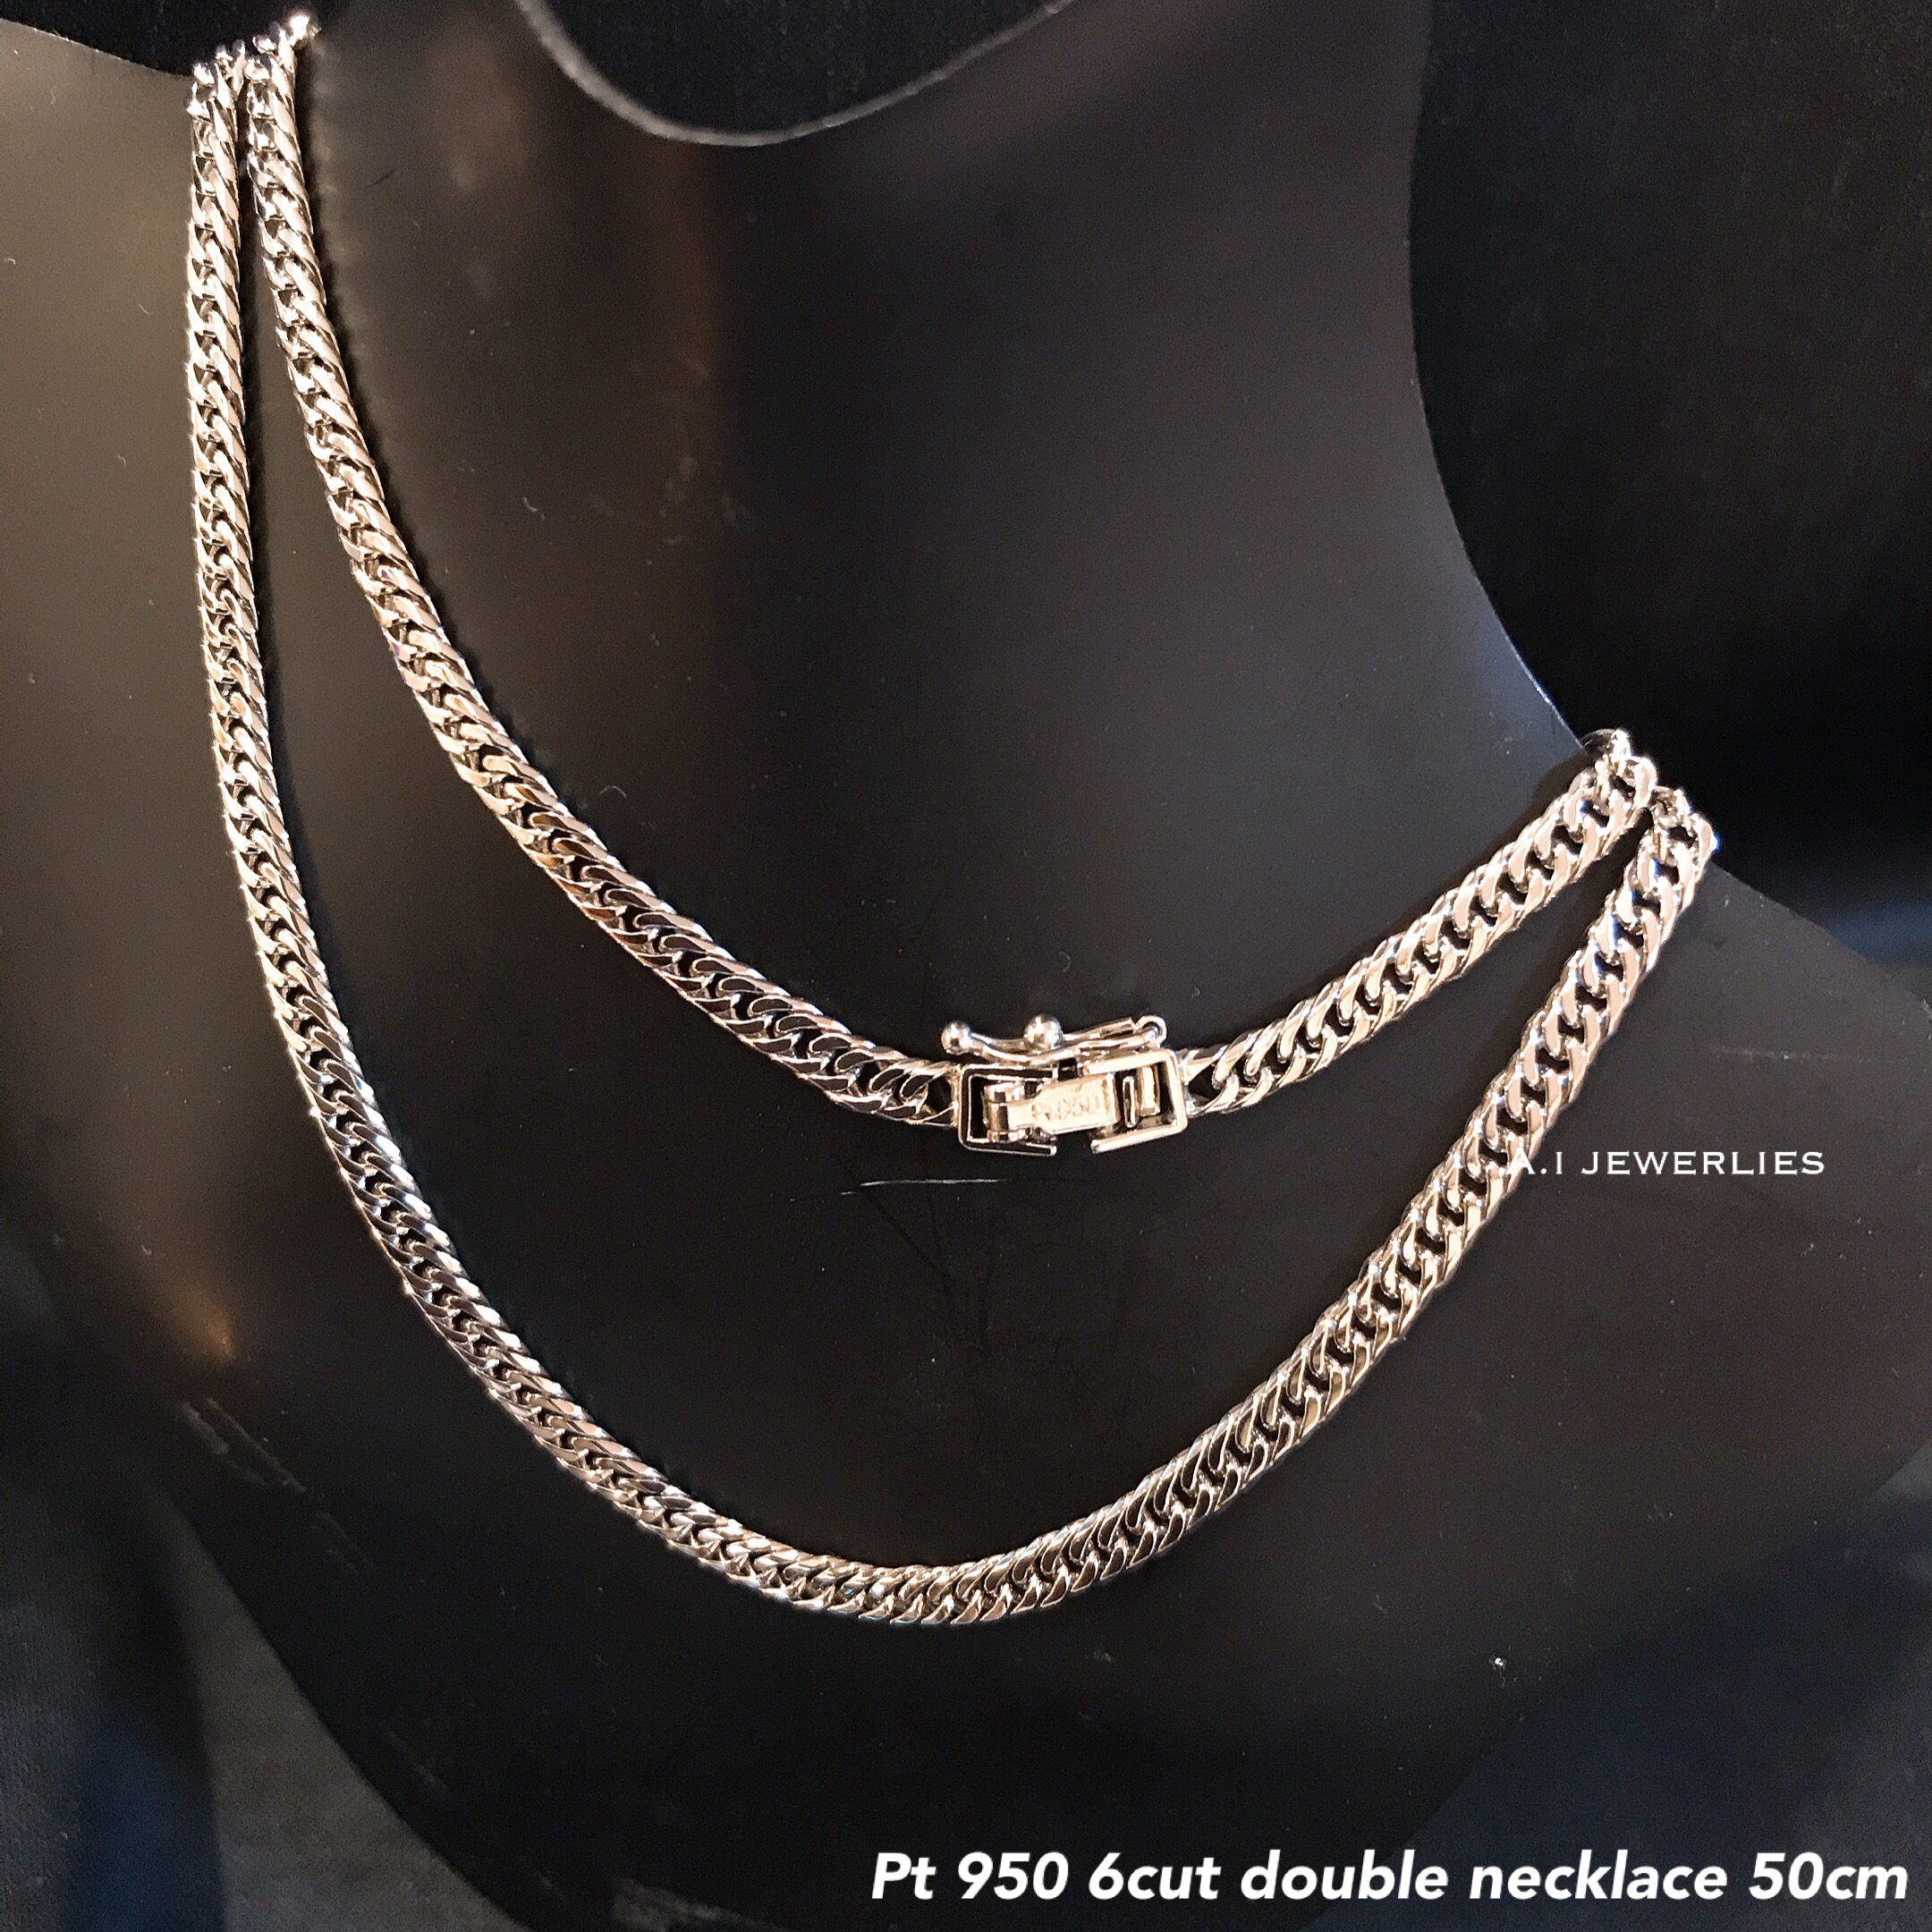 プラチナ 喜平 ネックレス Pt950 6面ダブル g 50cm ネックレス Pt950 6cut Double Necklace 50cm A I Jewelries エイアイジュエリーズ